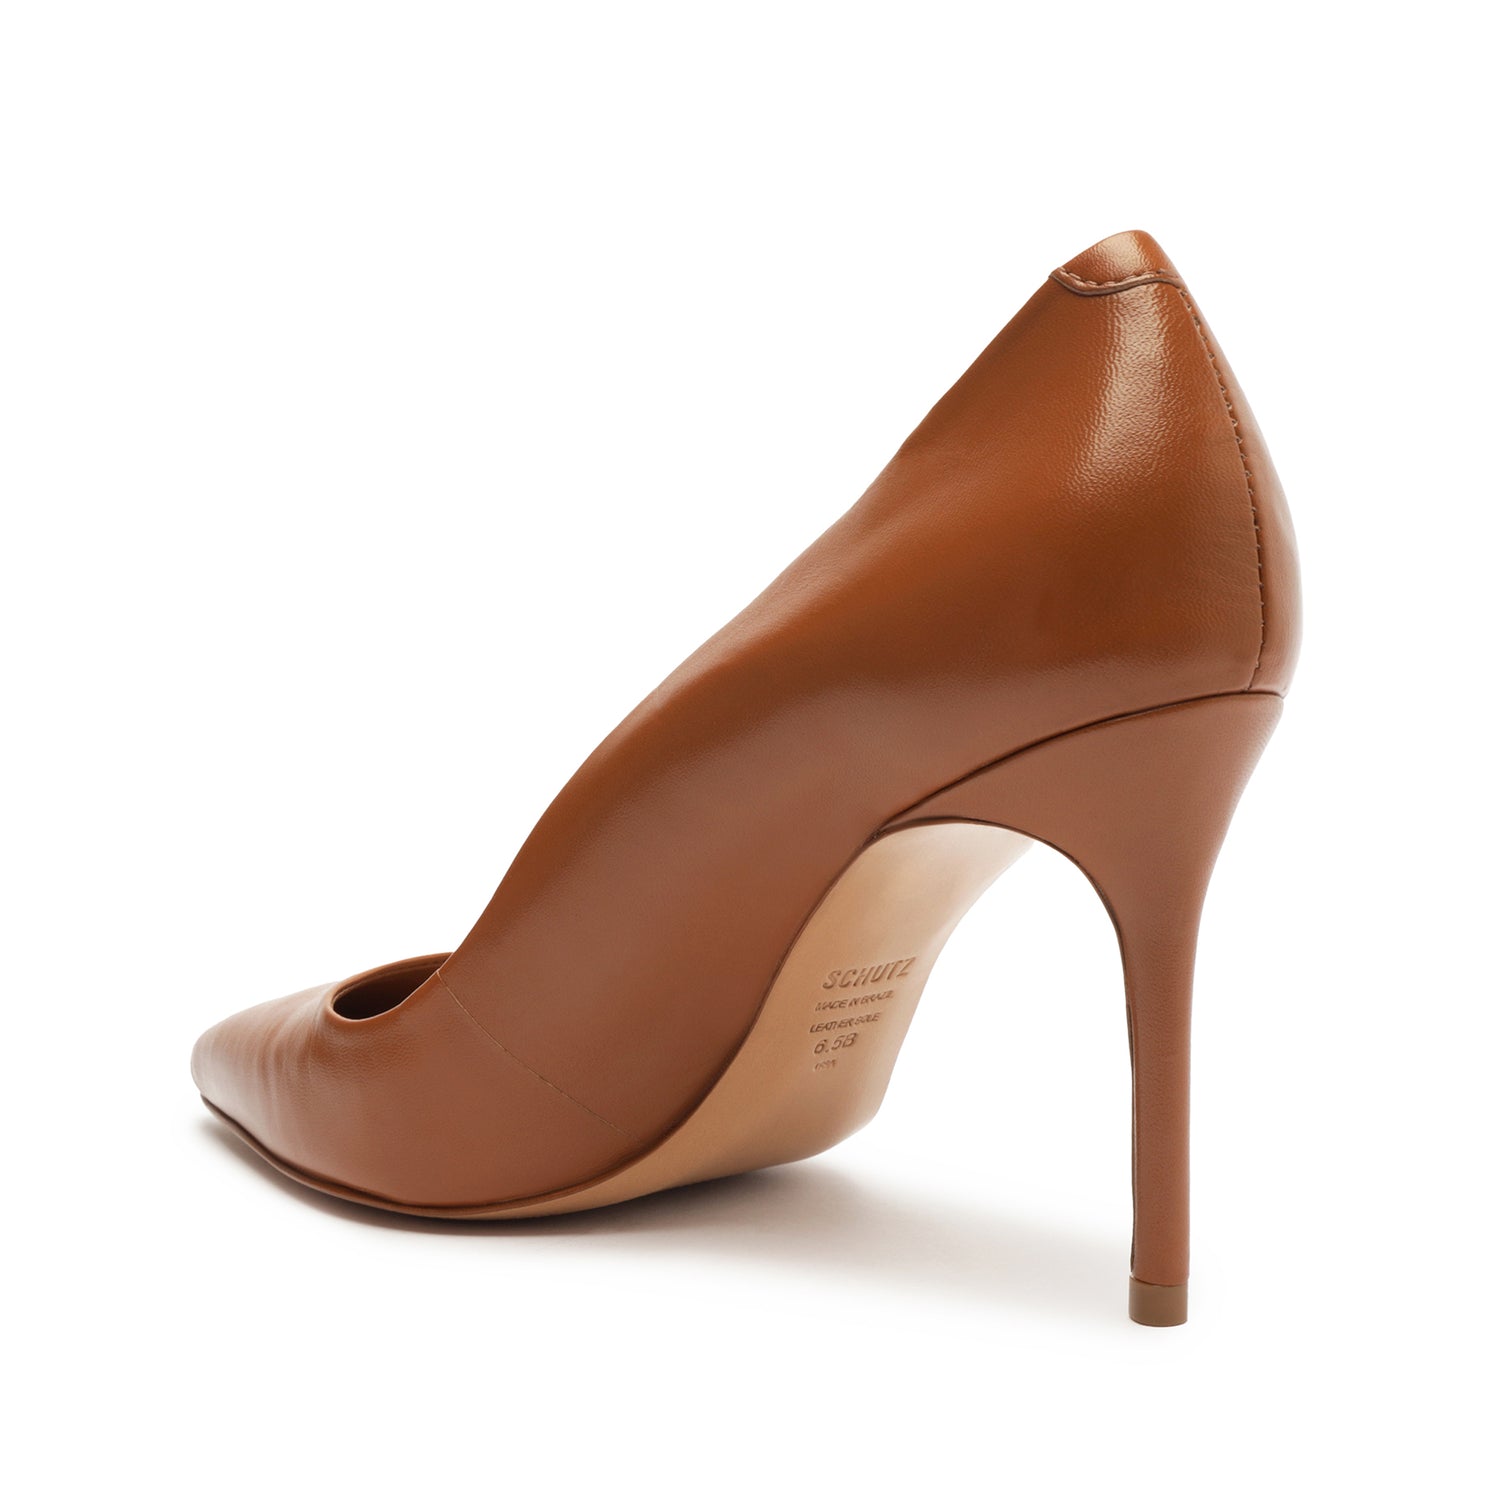 Buy Mochi Women Brown Casual Pumps Online | SKU: 31-7099-12-36 – Mochi Shoes